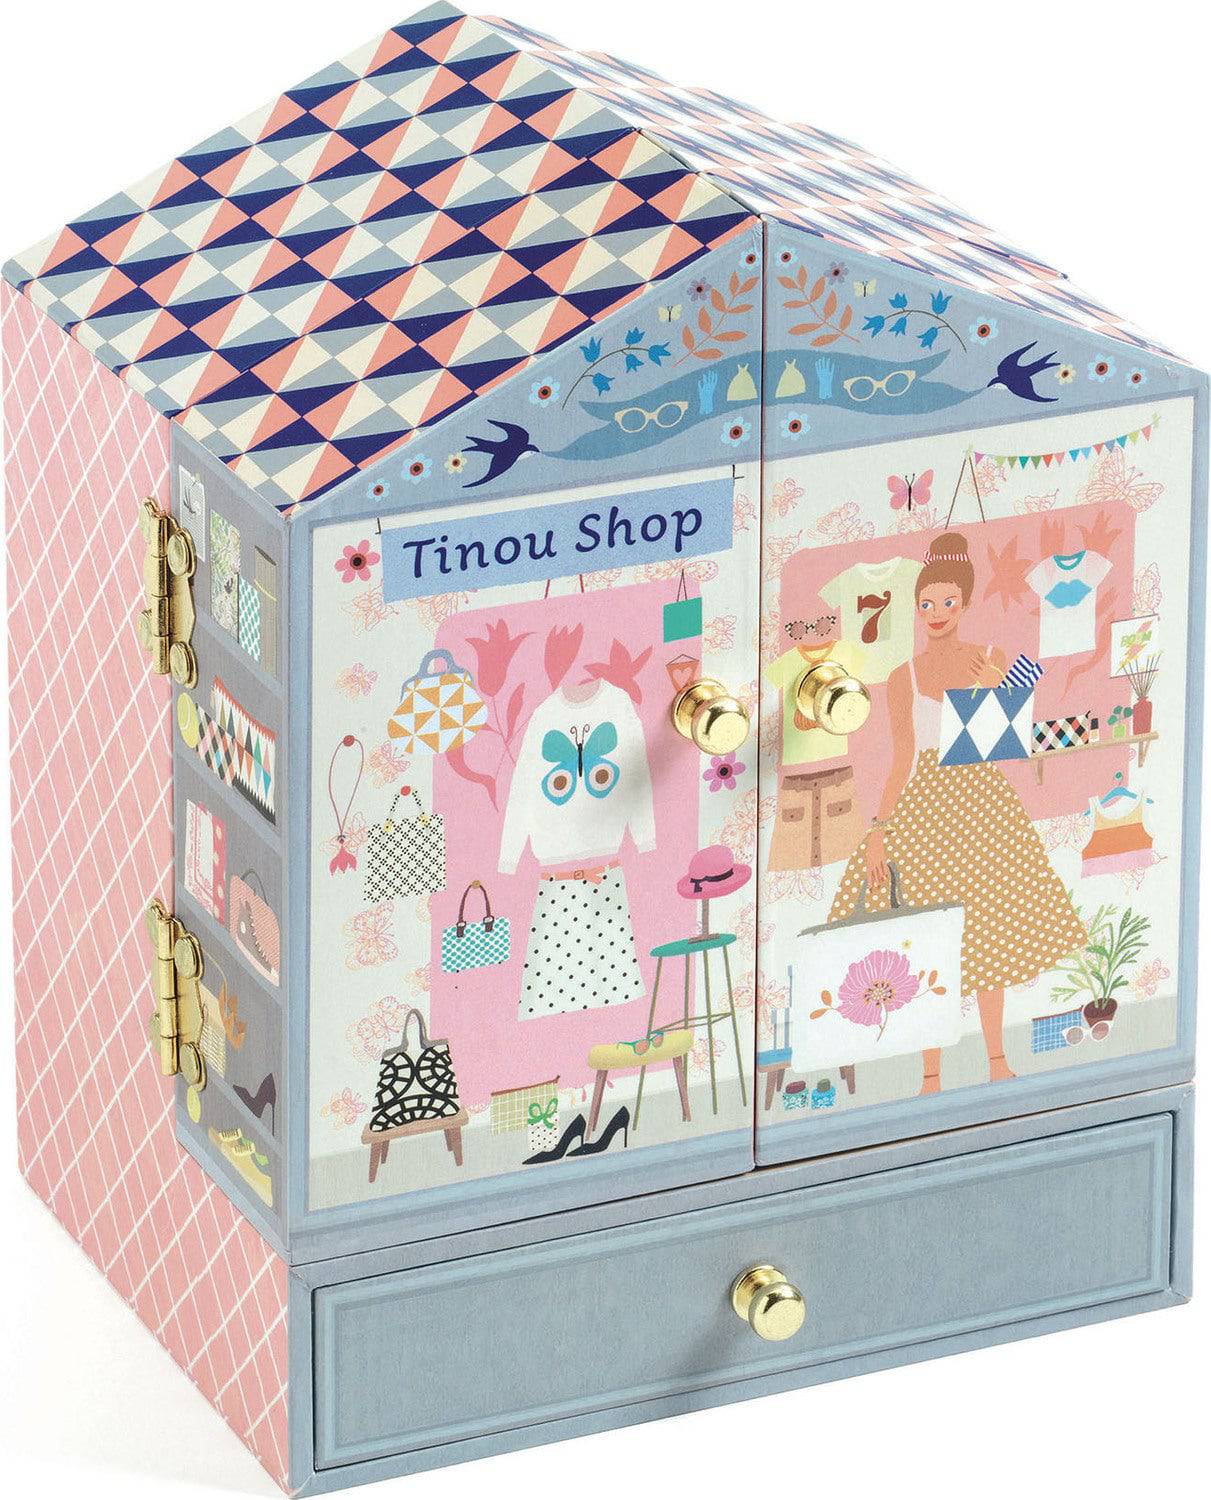 DJ06084 TREASURE BOXES TINOU - A Child's Delight